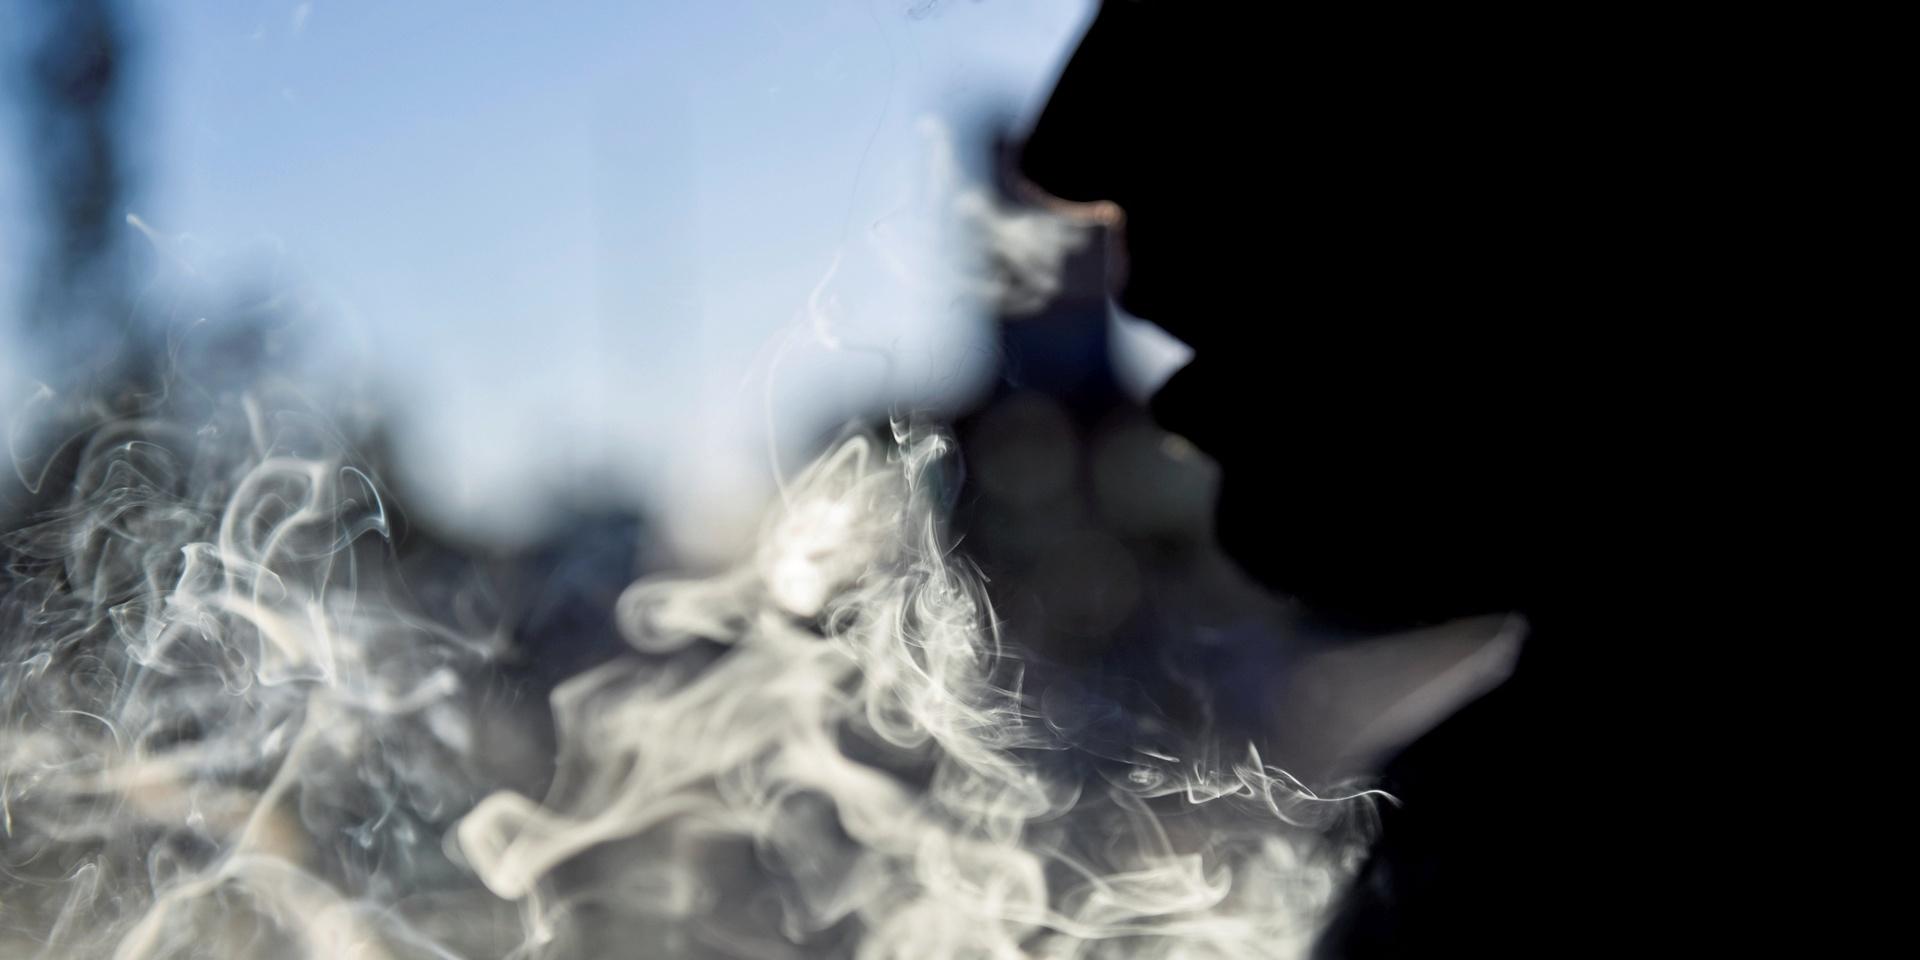 ”Är vägen mot minskad skjutning och gängkriminalitet legalisering av cannabis? Detta är enligt mitt sätt att se det helt fel väg att gå”, anser skribenten.